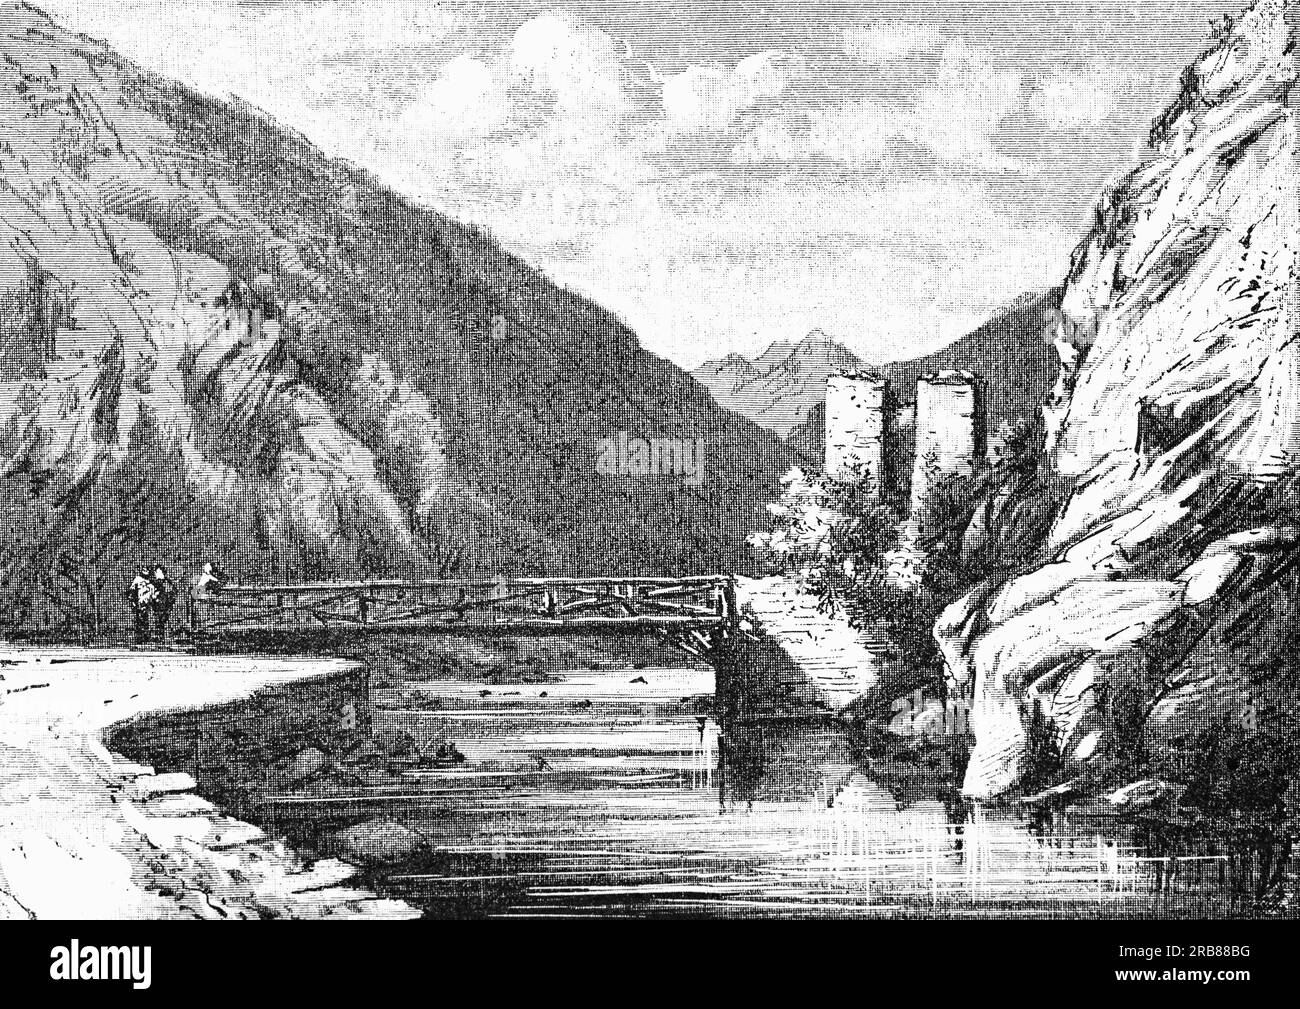 Une illustration de la fin du 19e siècle de l'ancien Pont-du-Roi ou Pont du Roi, un passage frontalier sur la Garonne qui relie le Val d'Aran en Espagne au département de la haute-Garonne en France. Banque D'Images